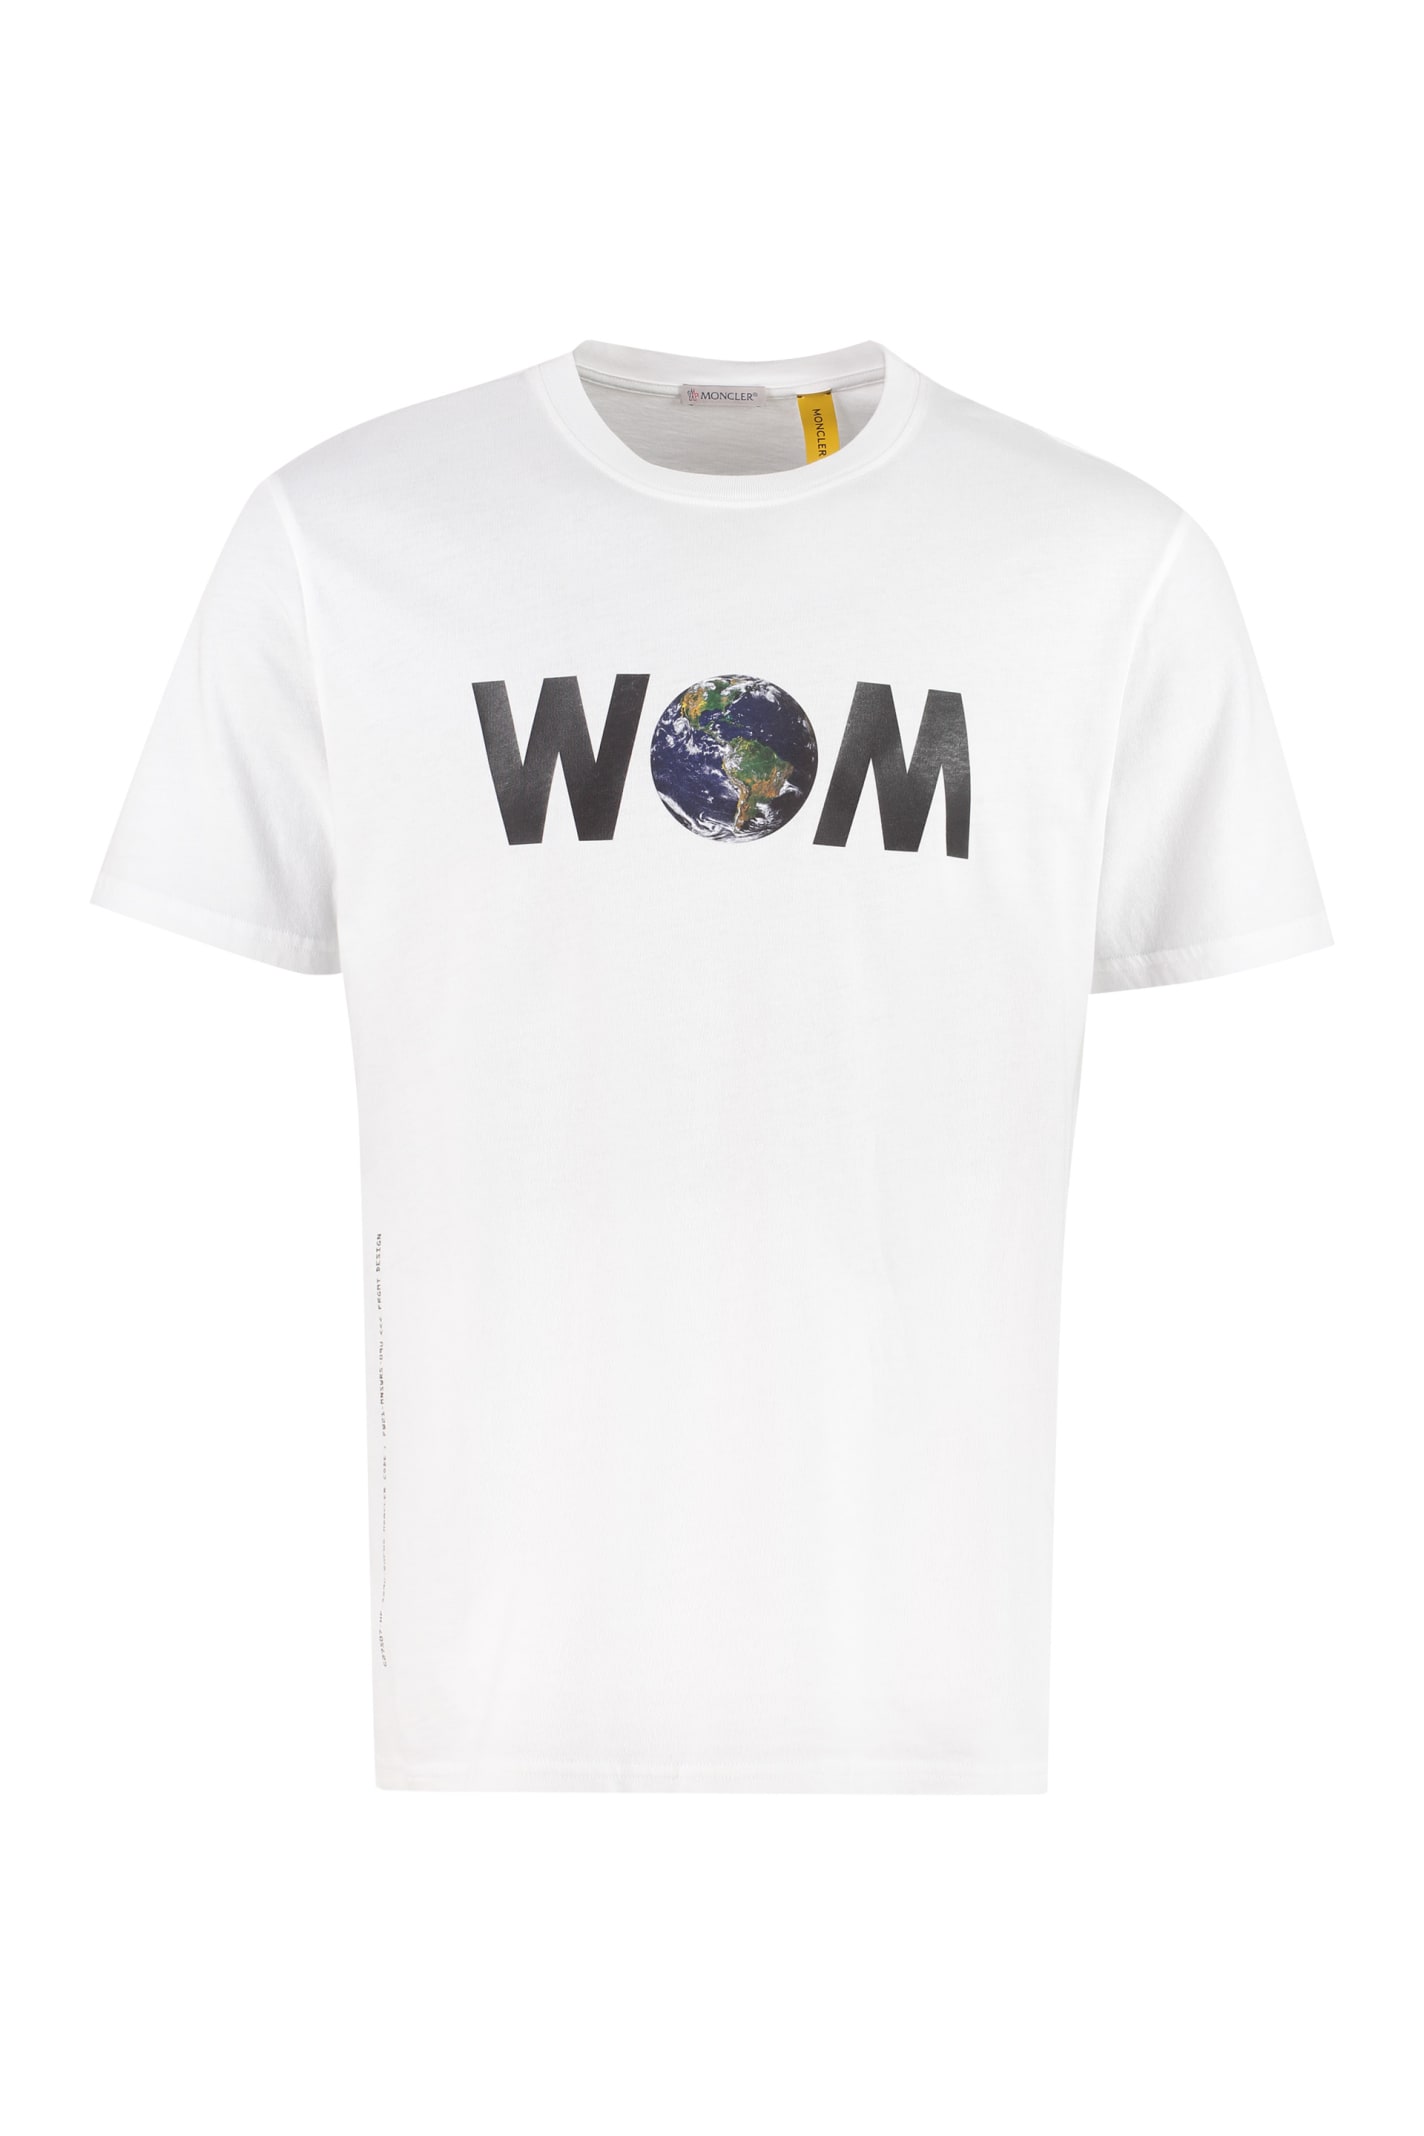 Moncler Genius 7 Moncler Frgmt Hiroshi Fujiwara - Printed Cotton T-shirt